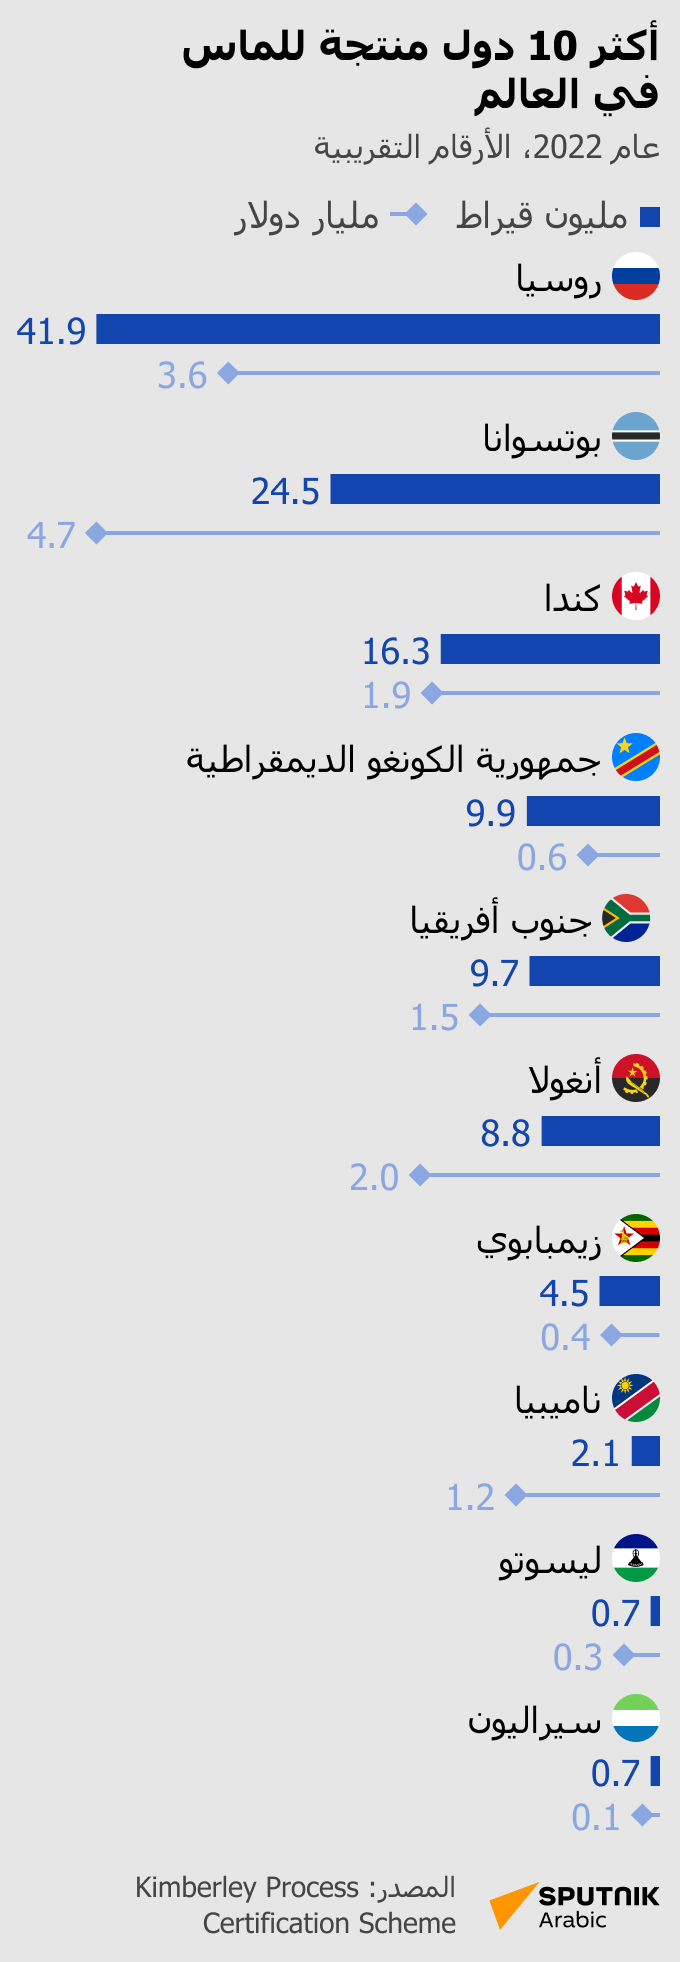 أكثر 10 دول إنتاجاً للماس في العالم - البلد عربي